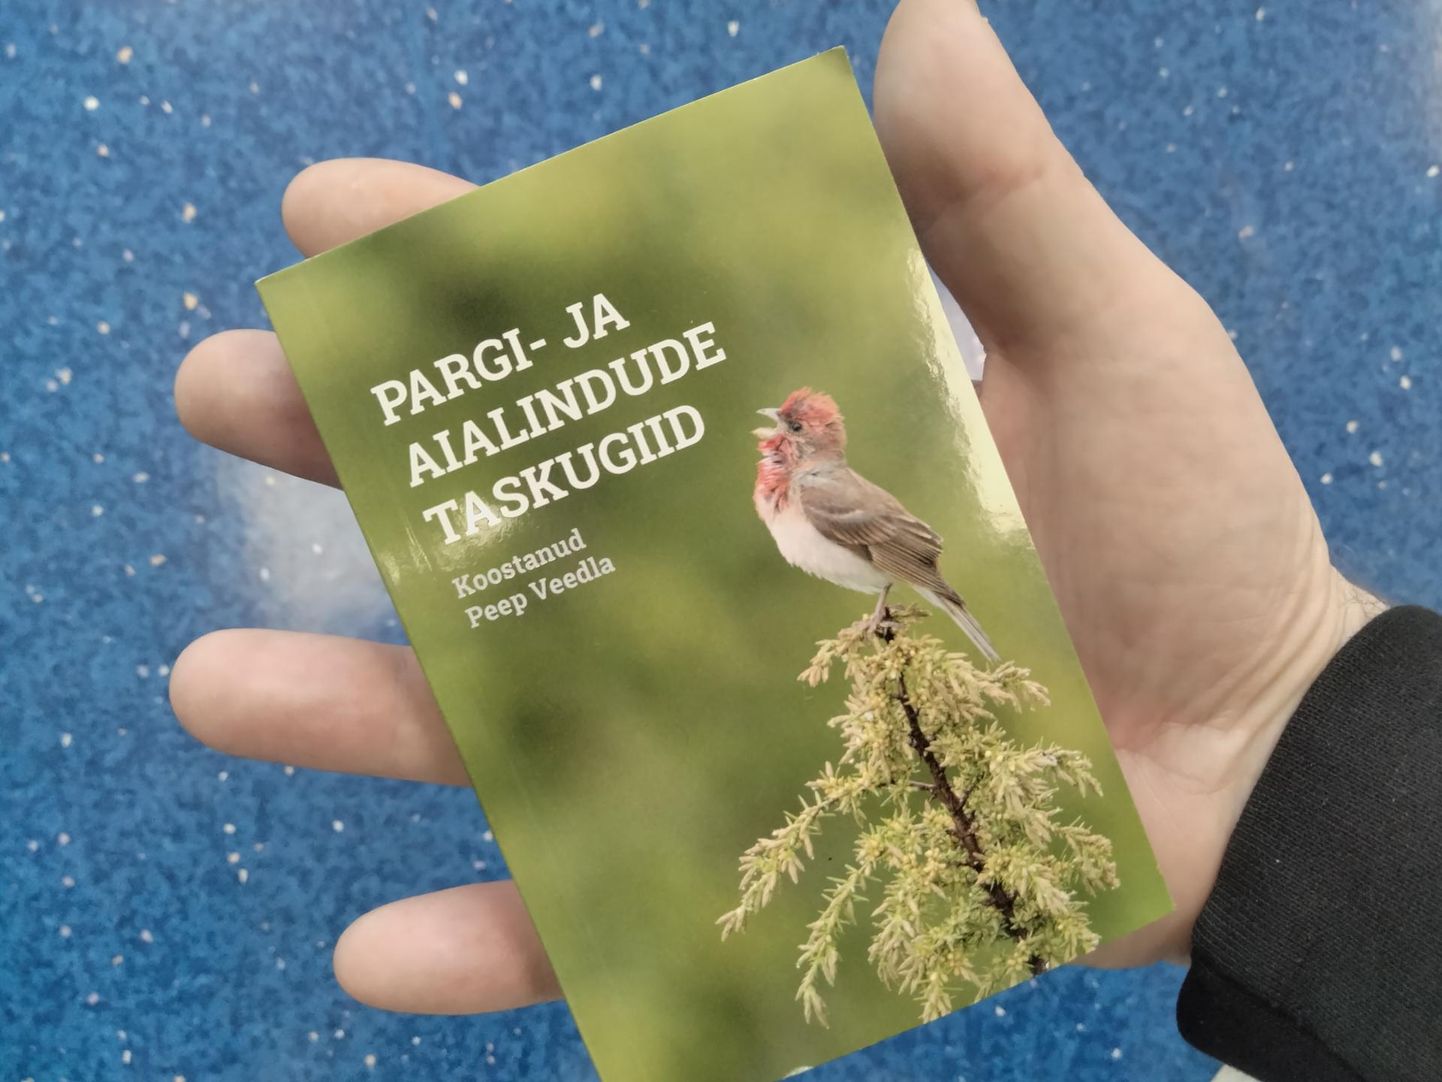 Peep Veedlal on ilmunud uus linnuraamat, mis mahub ka väiksemasse taskusse.